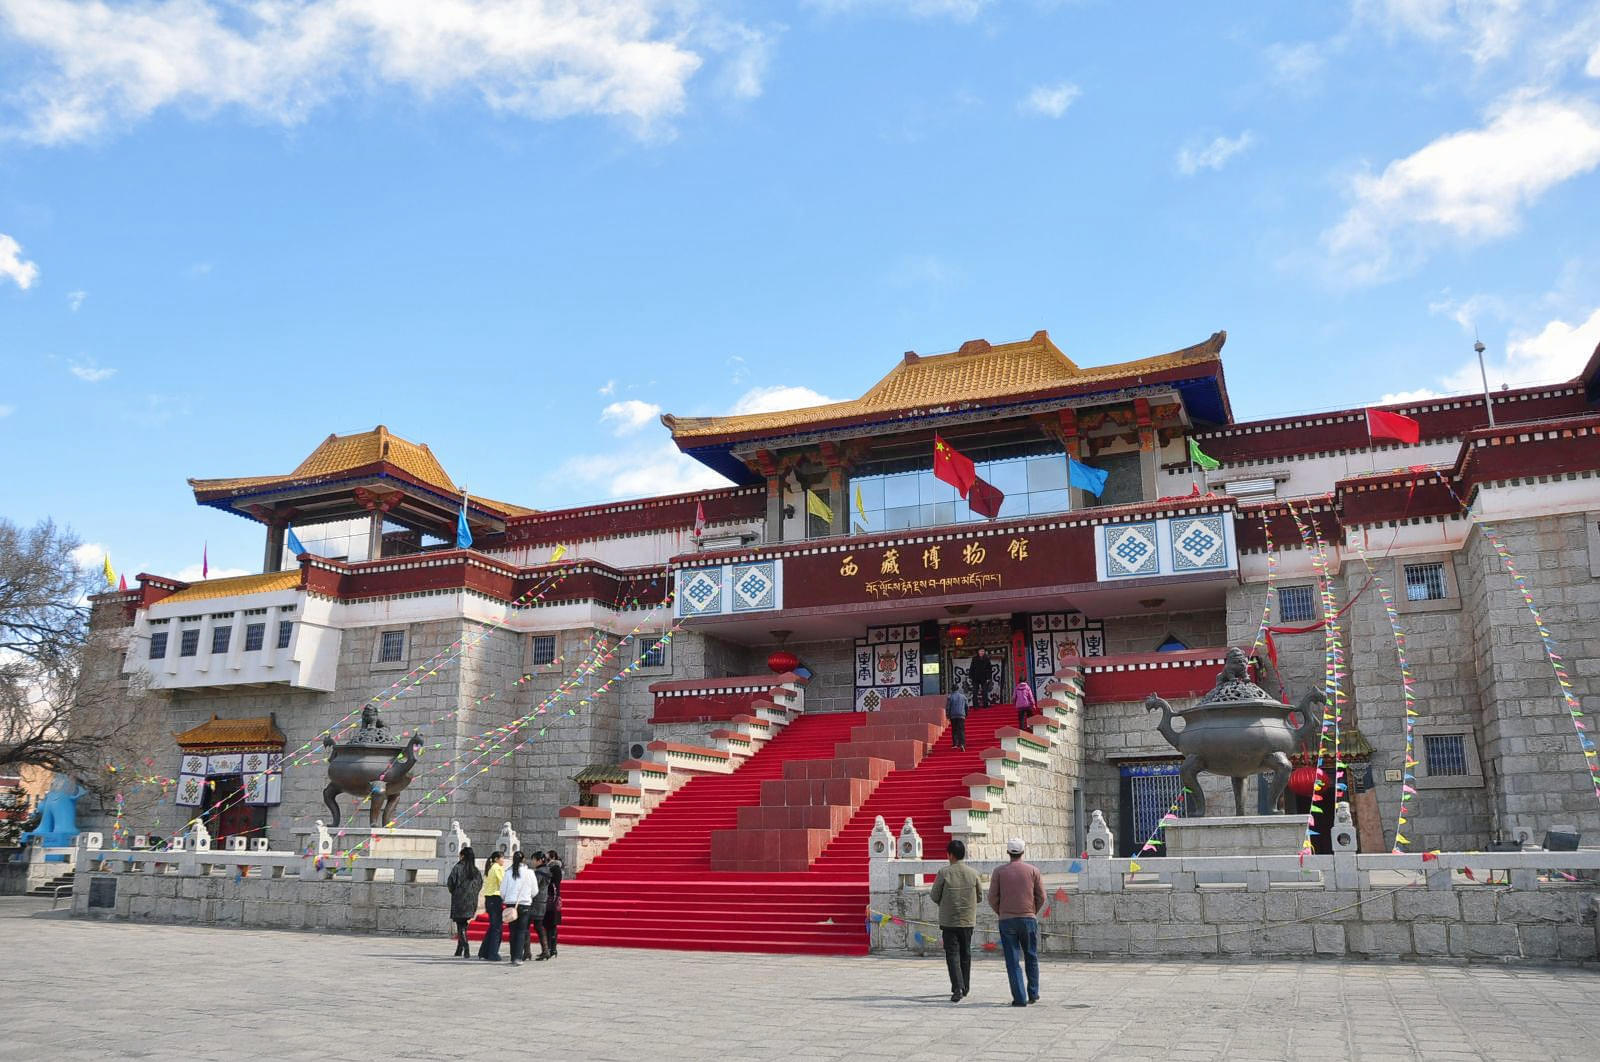 Tibet Museum Overview